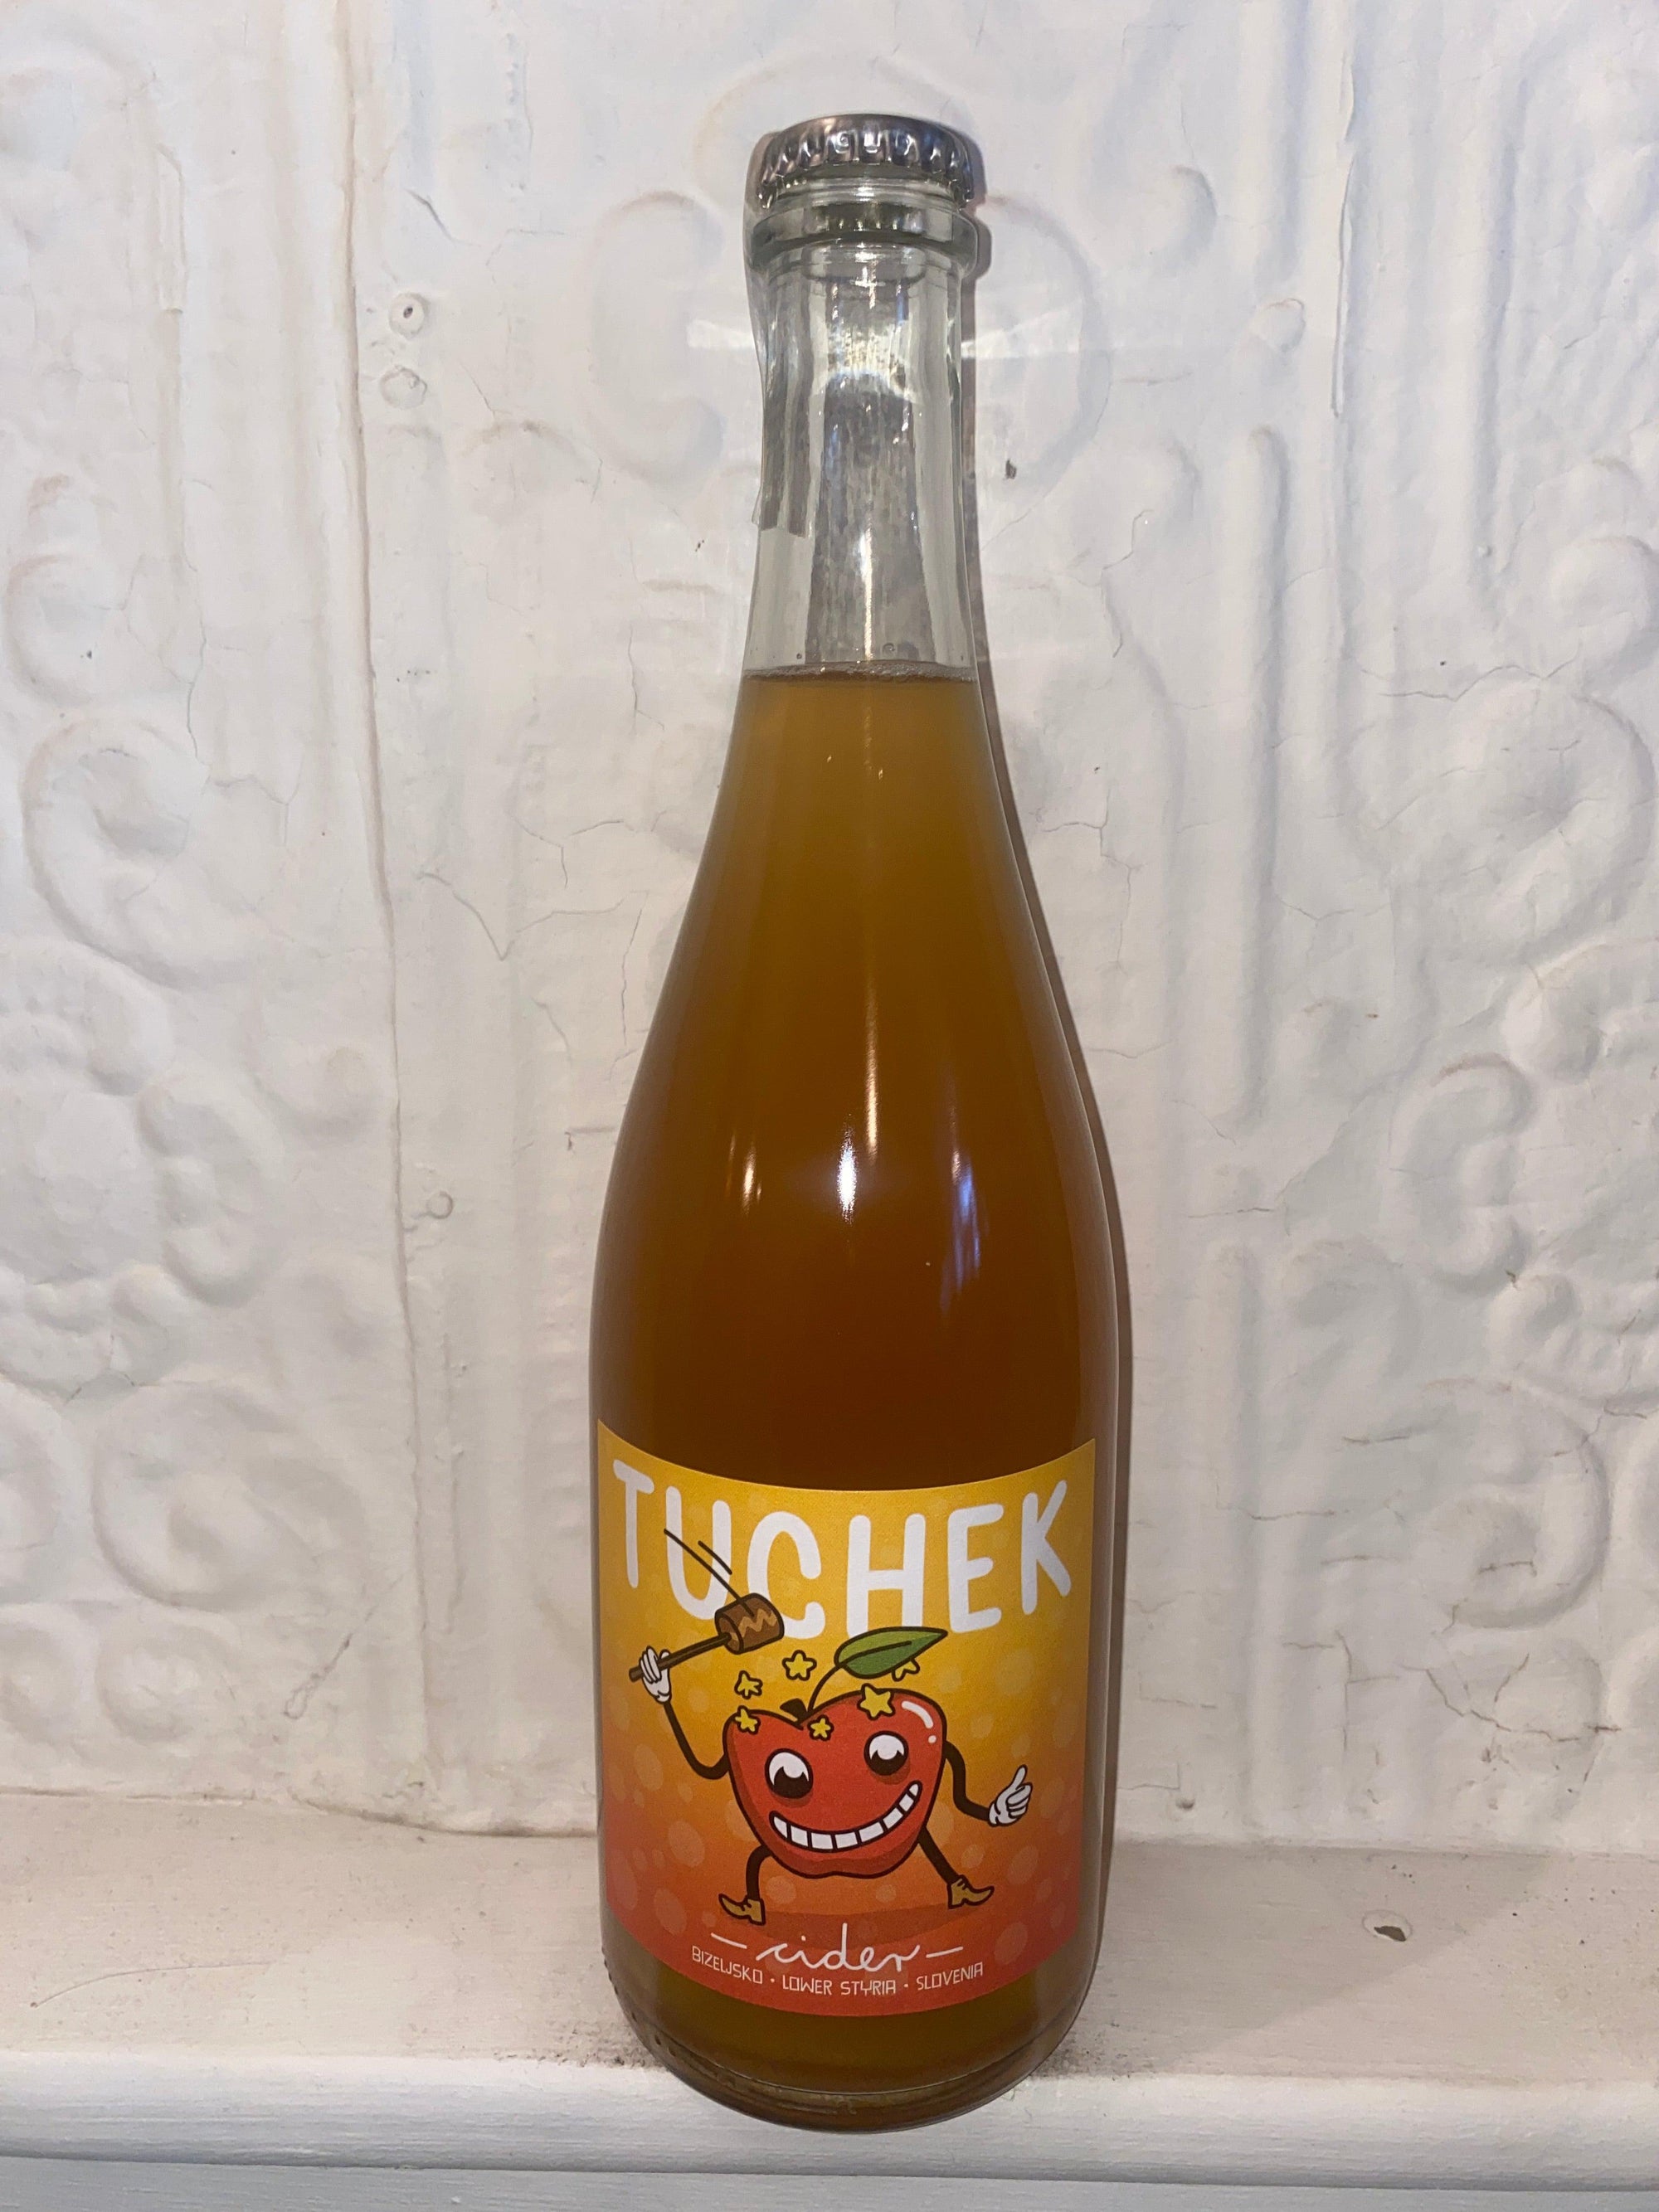 Tuchek Cider, Keltis 2020 (Lower Styria, Slovenia)-Bibber & Bell